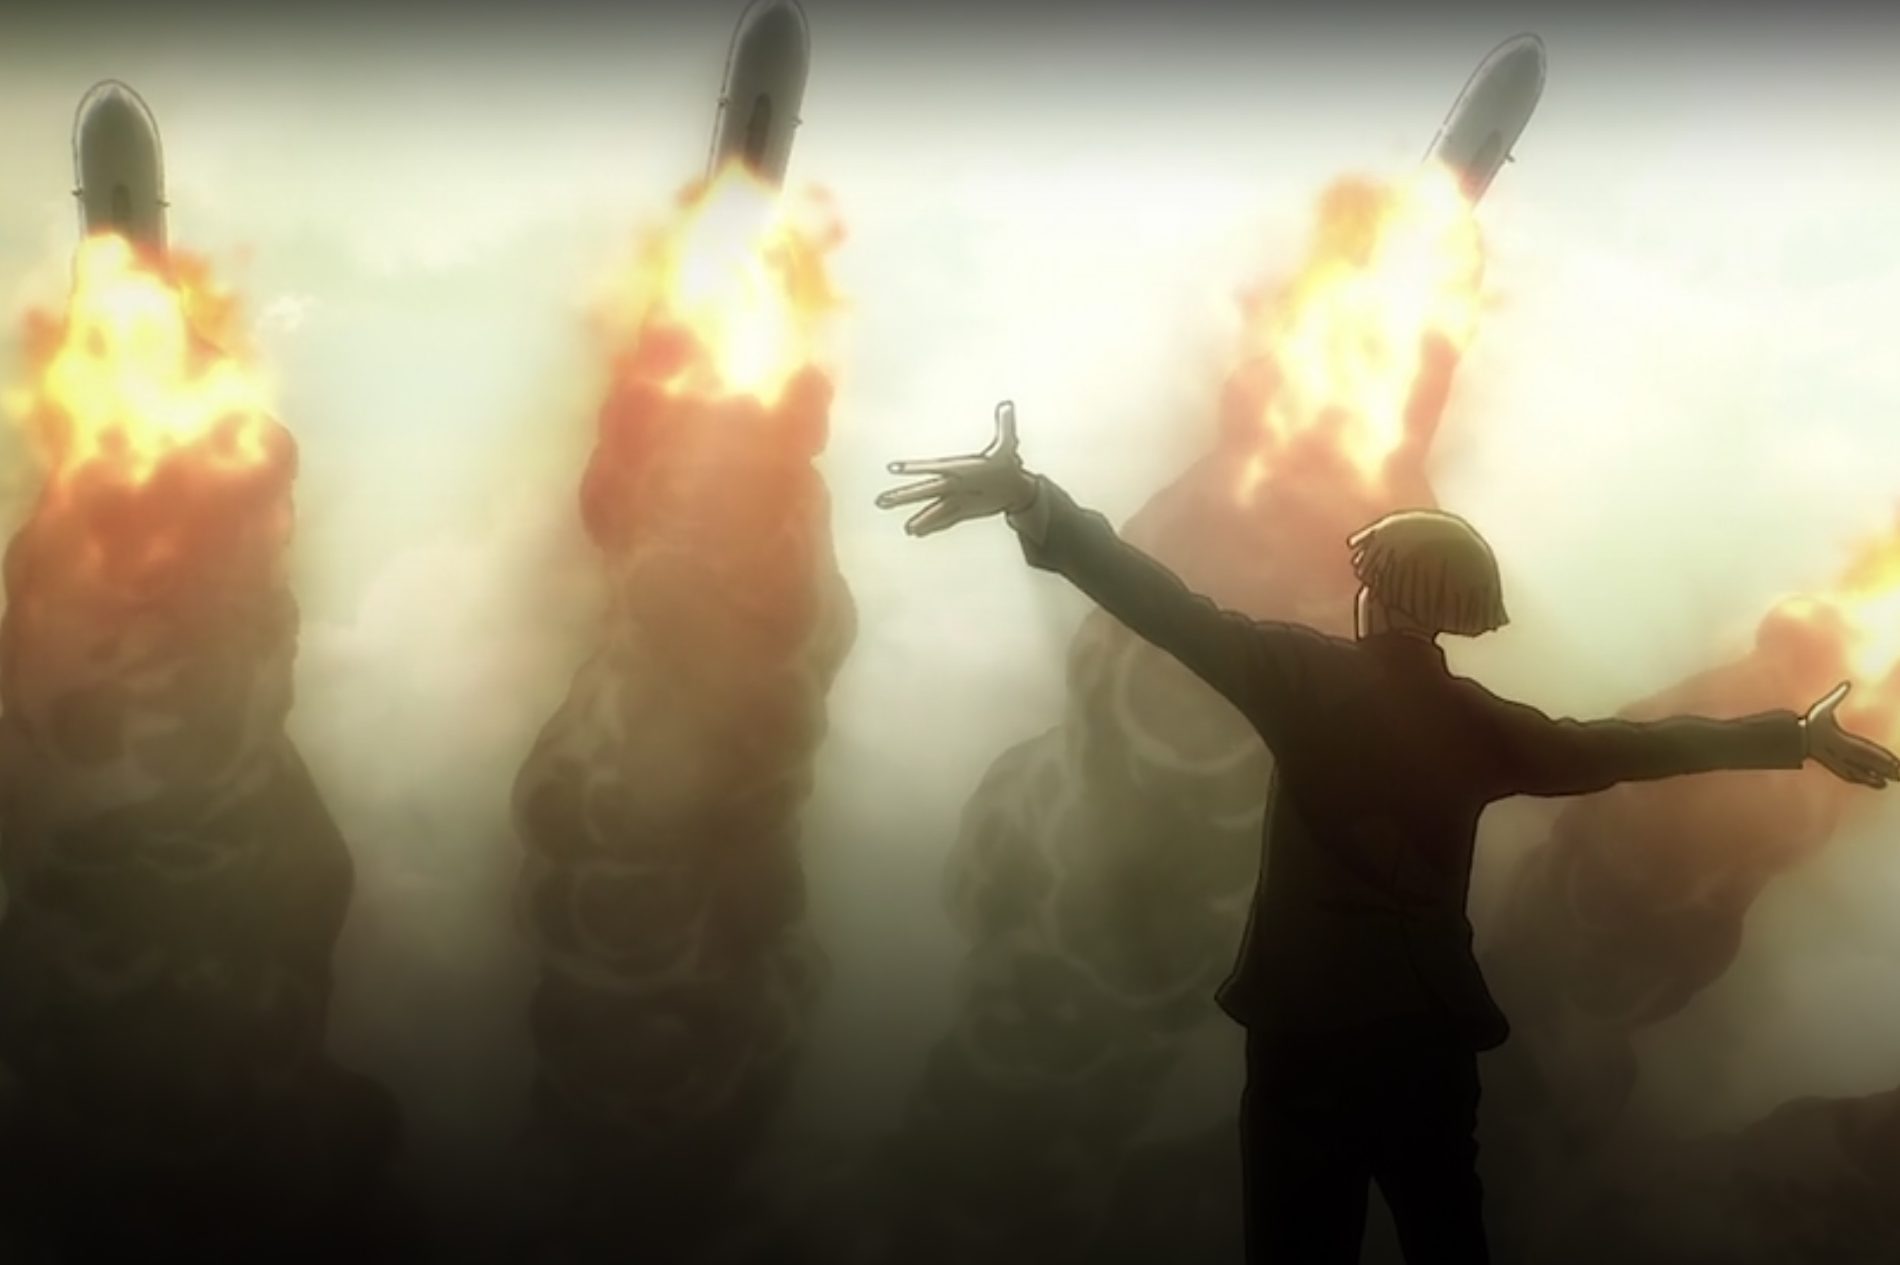 Shingeki no Kyojin Temporada 4 parte 2 (Attack on Titan): Análise Episódio  77 (Ep. 2)